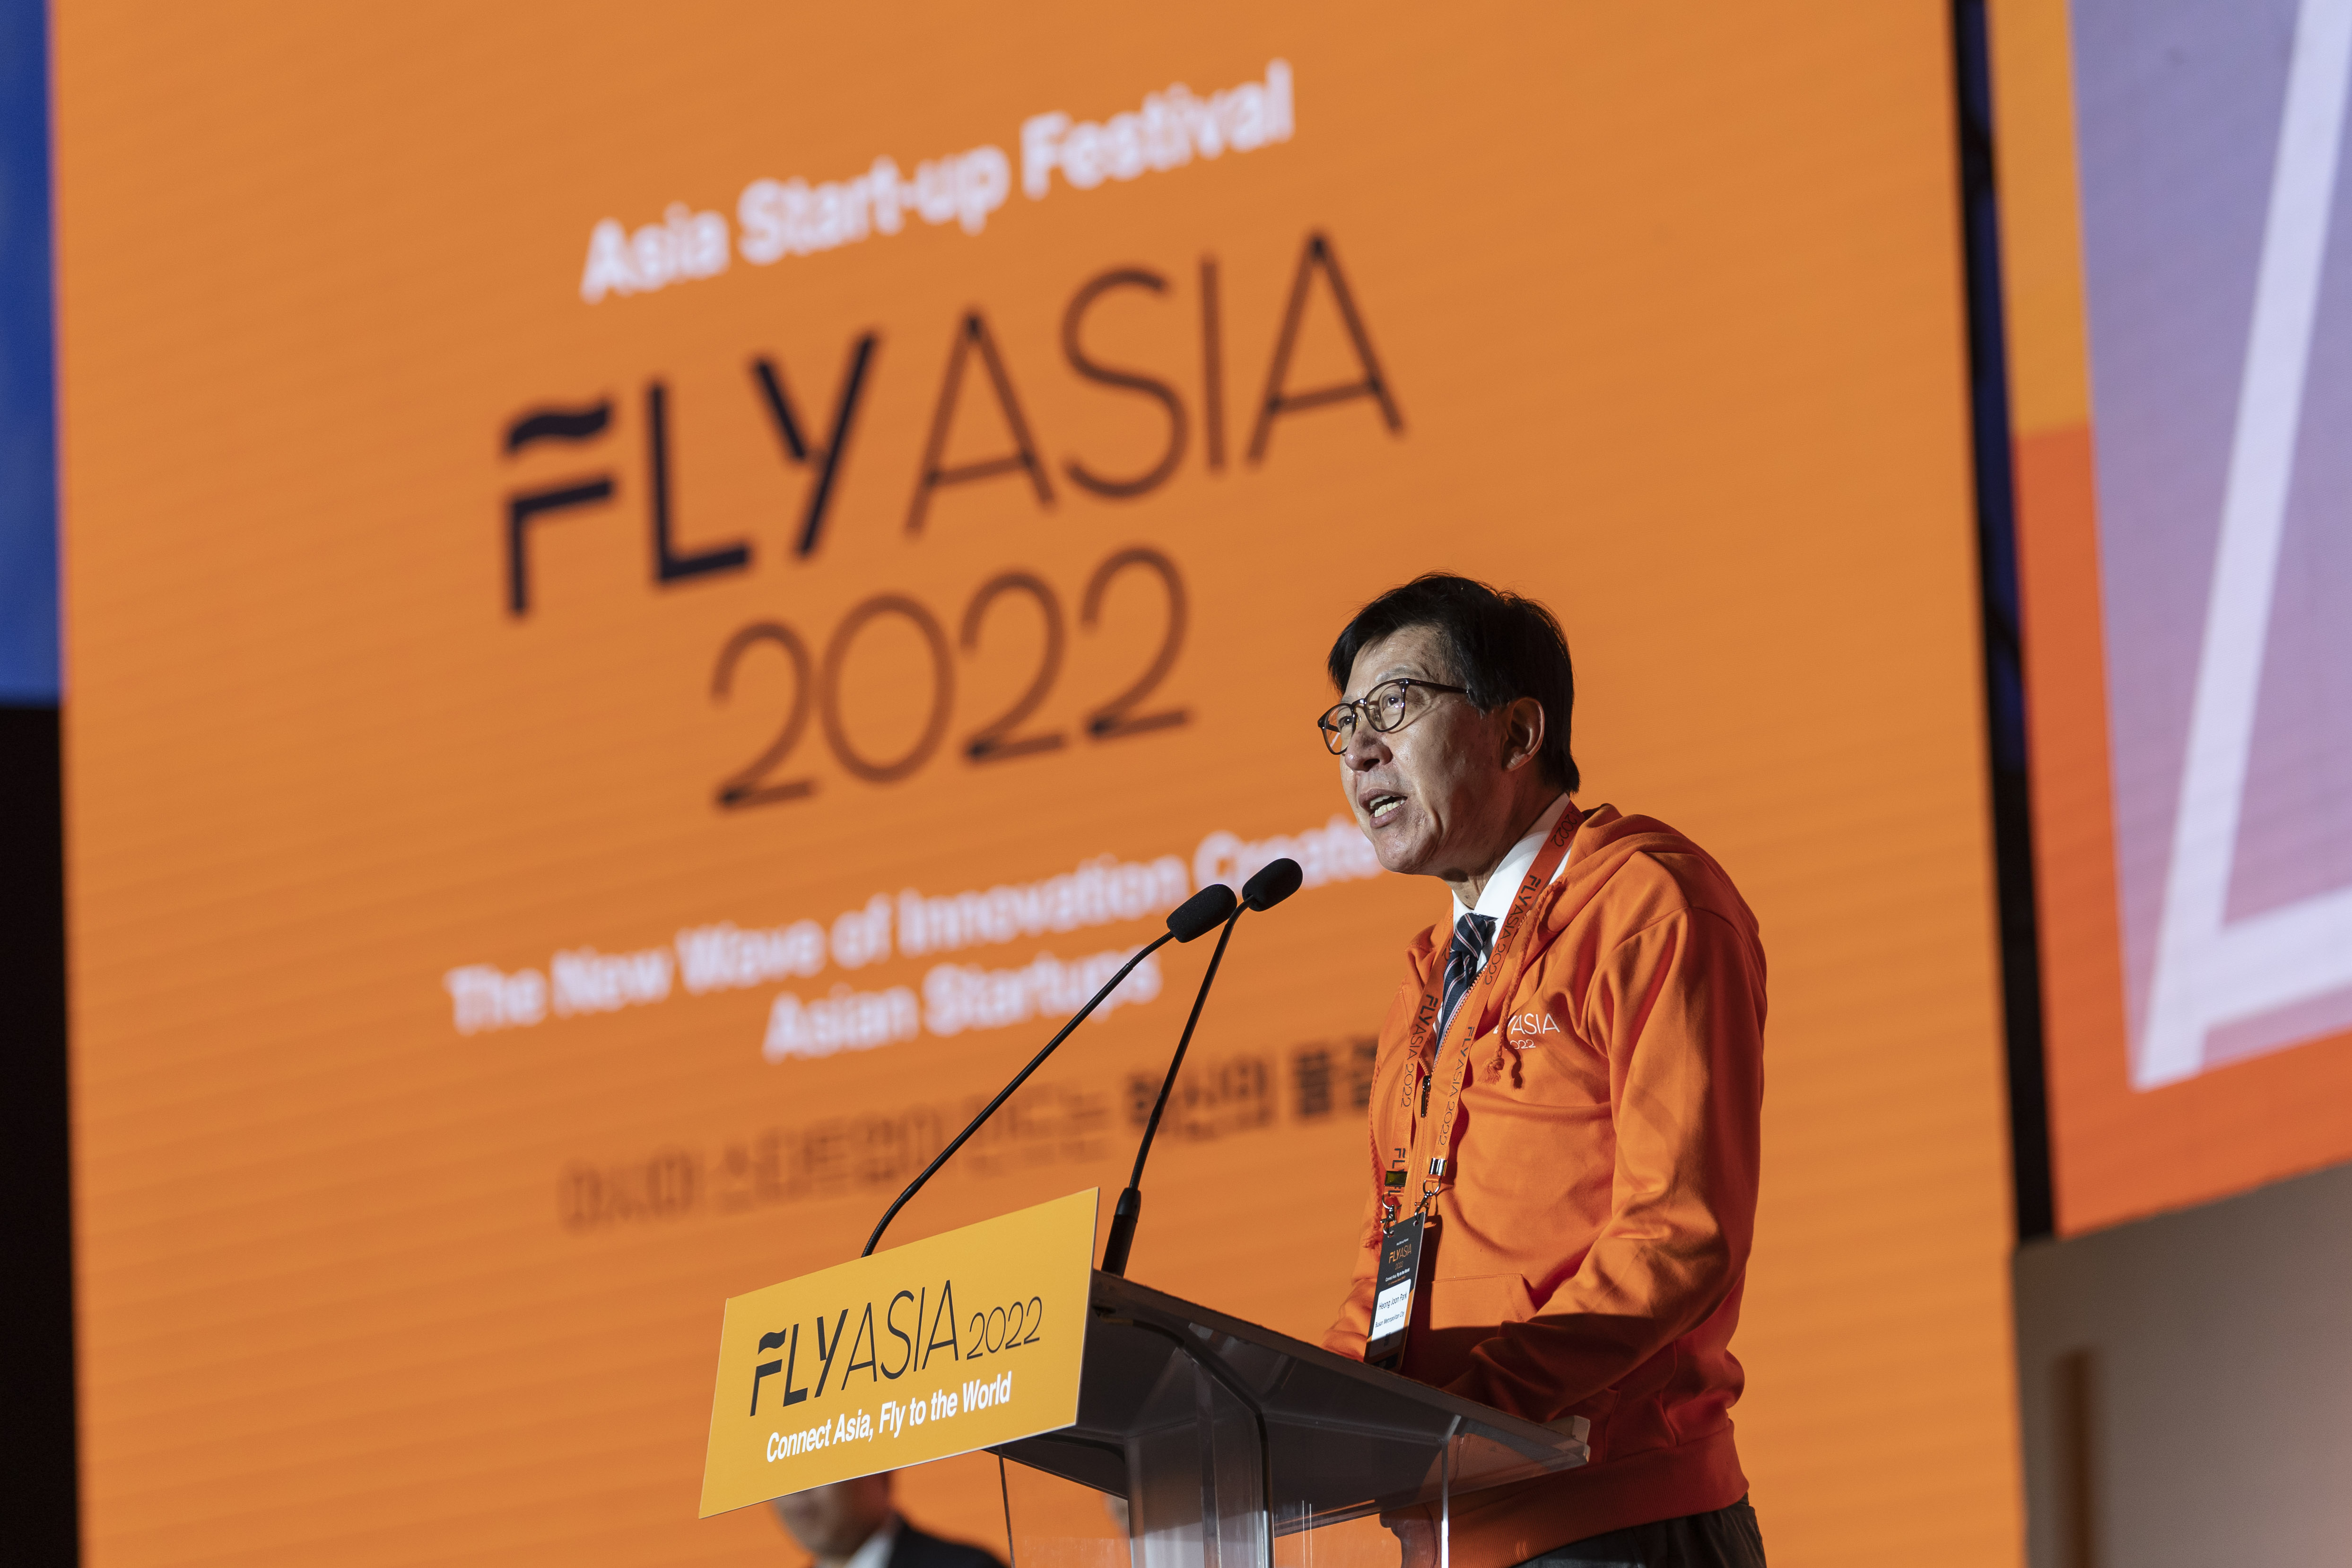 20221122 FLY ASIA 2022 아시아 창업 엑스포 개막식 (벡스코 제2전시장) 사진1